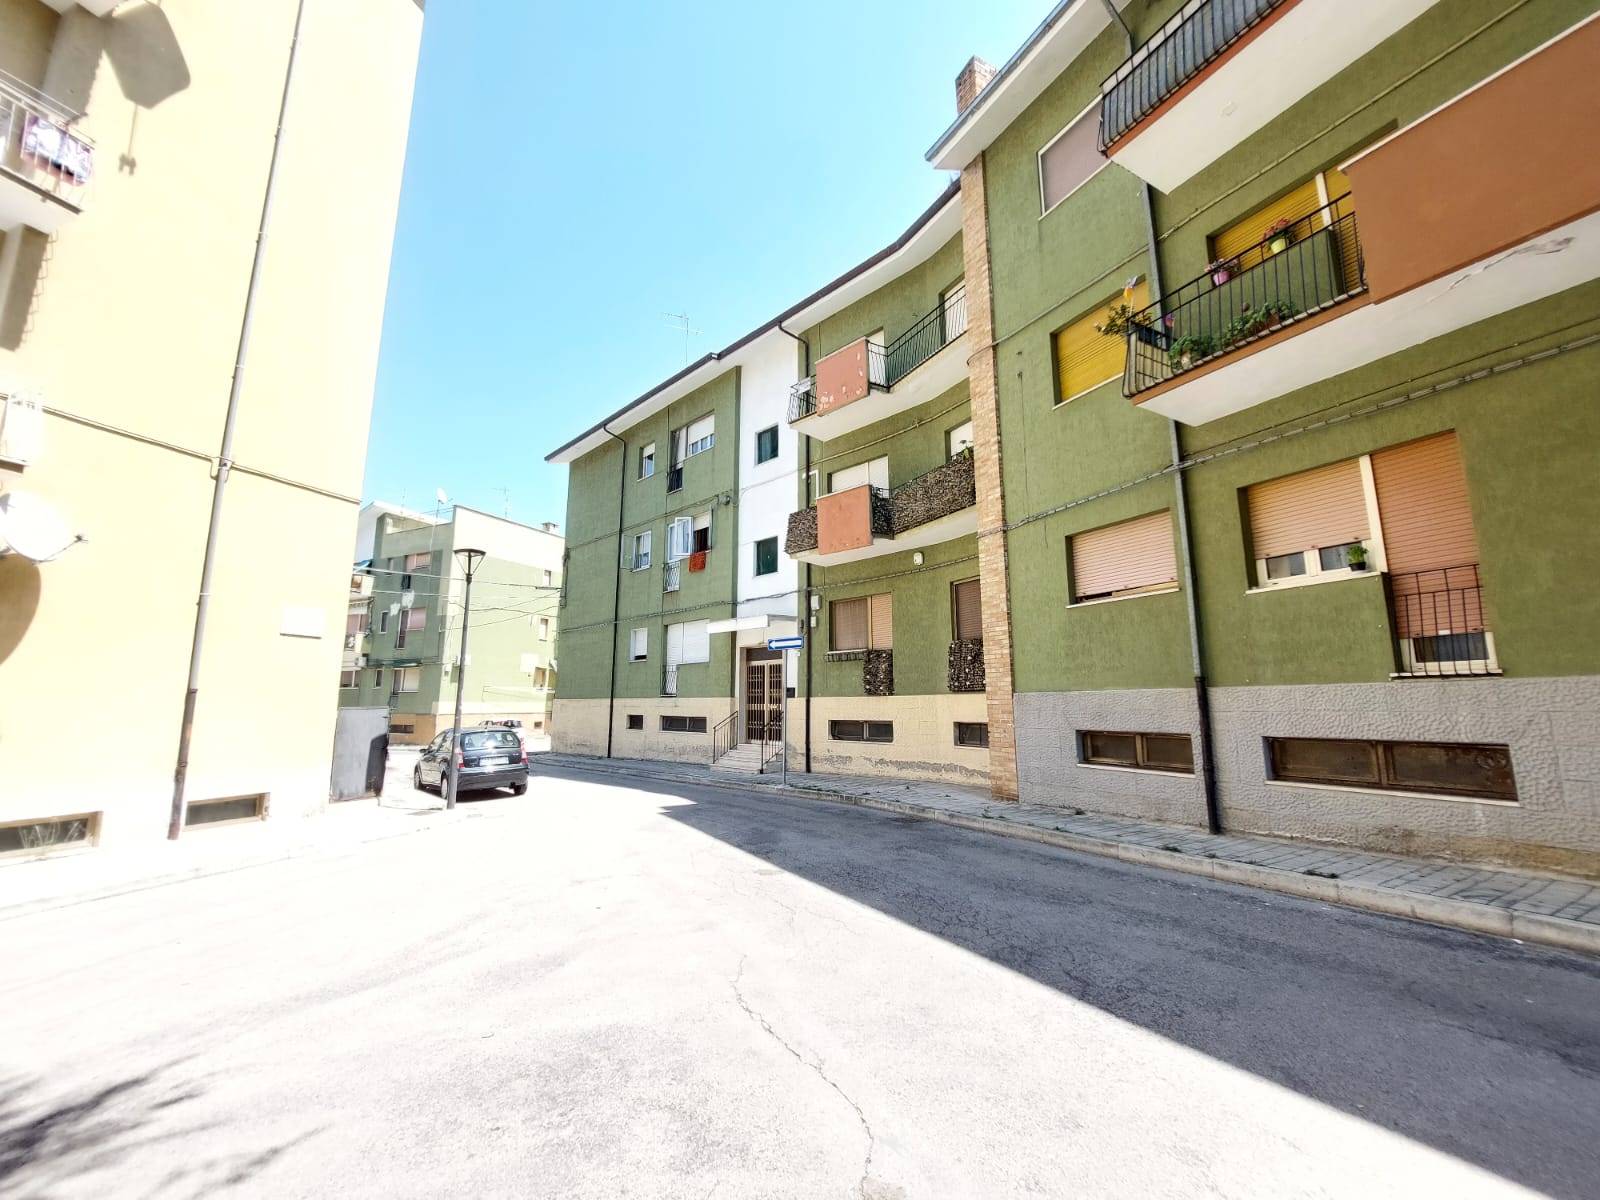 Appartamento in vendita a Lanciano, 7 locali, prezzo € 68.000 | CambioCasa.it